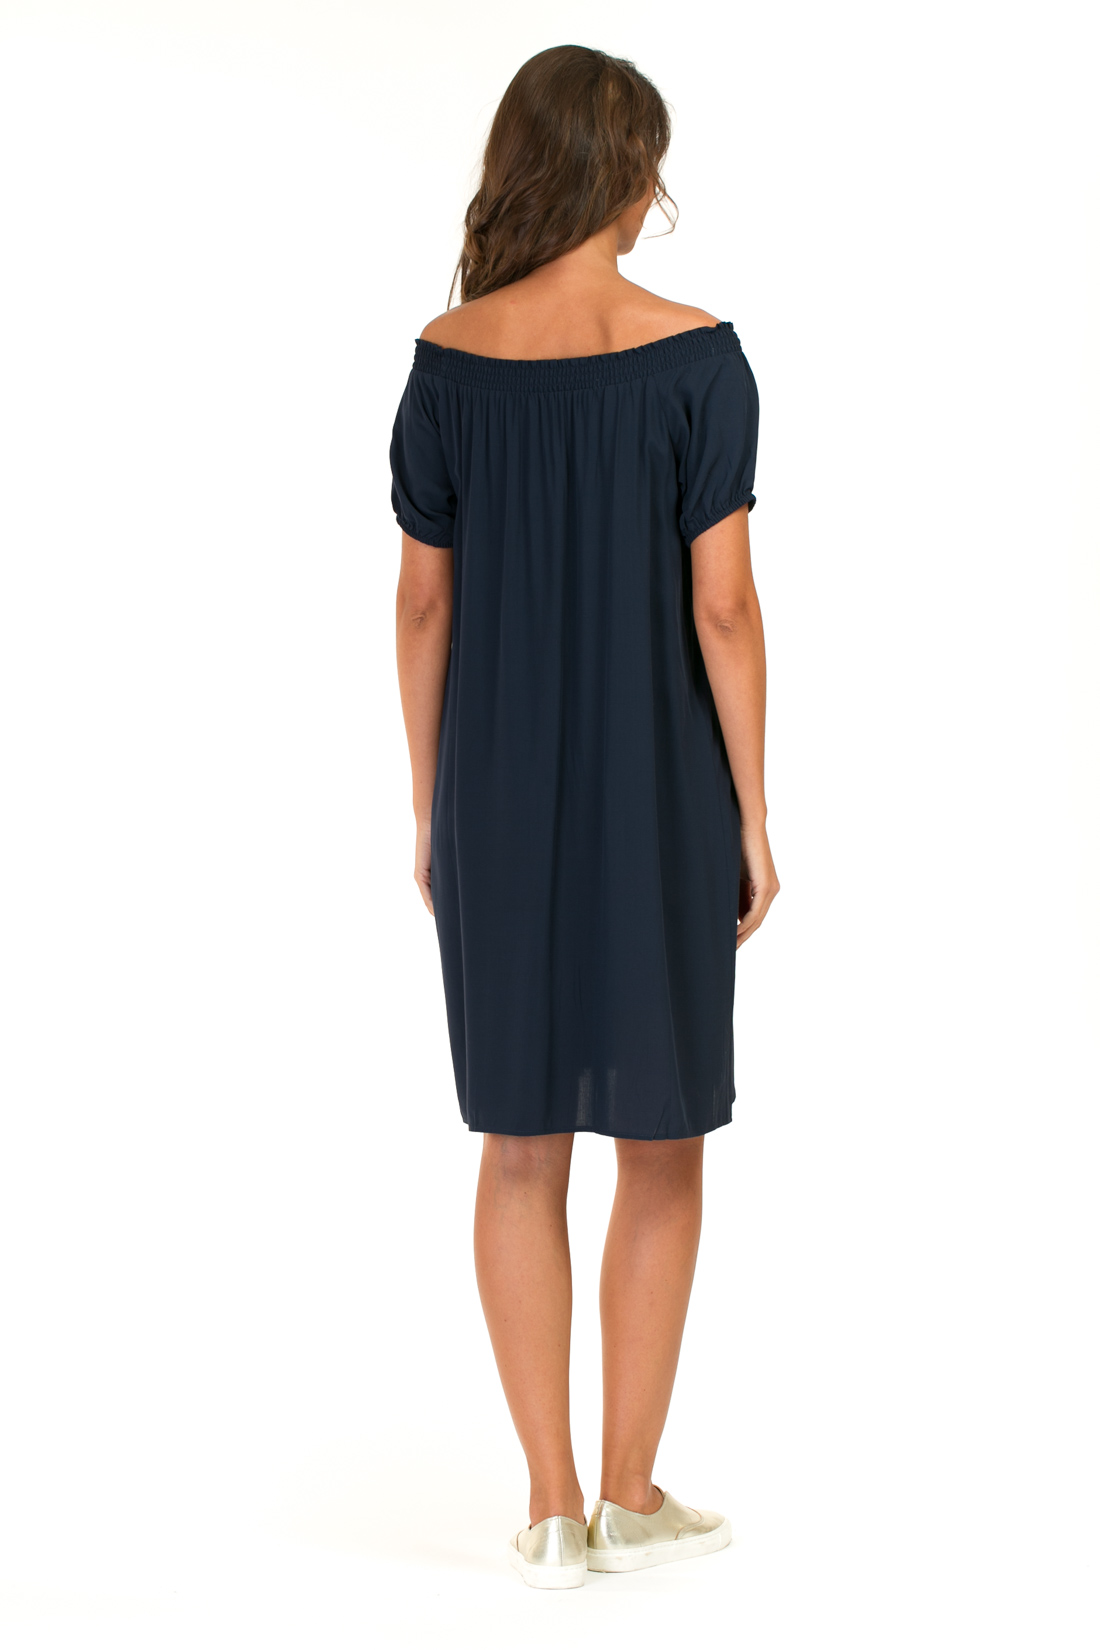 Платье с эластичным верхом (арт. baon B457054), размер L, цвет синий Платье с эластичным верхом (арт. baon B457054) - фото 2